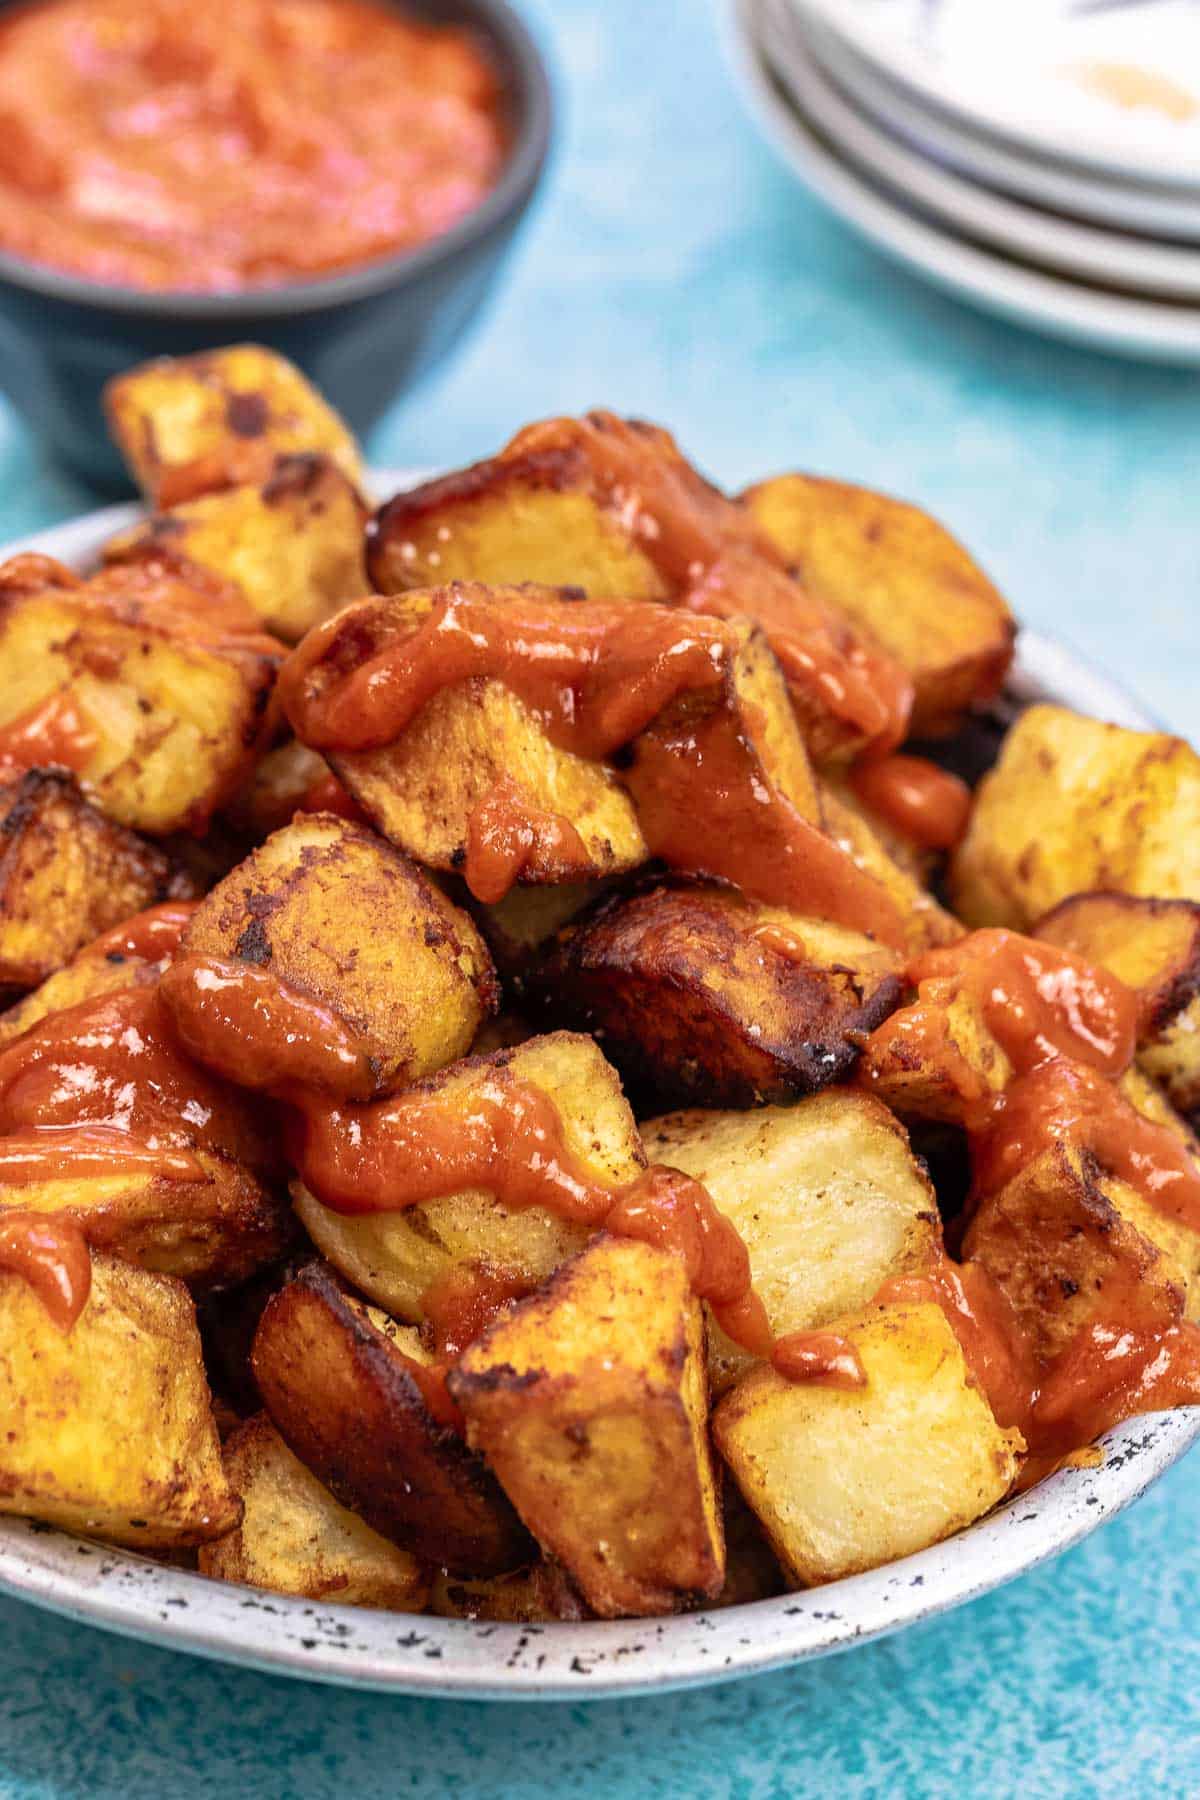 patatas bravas with bravas sauce.